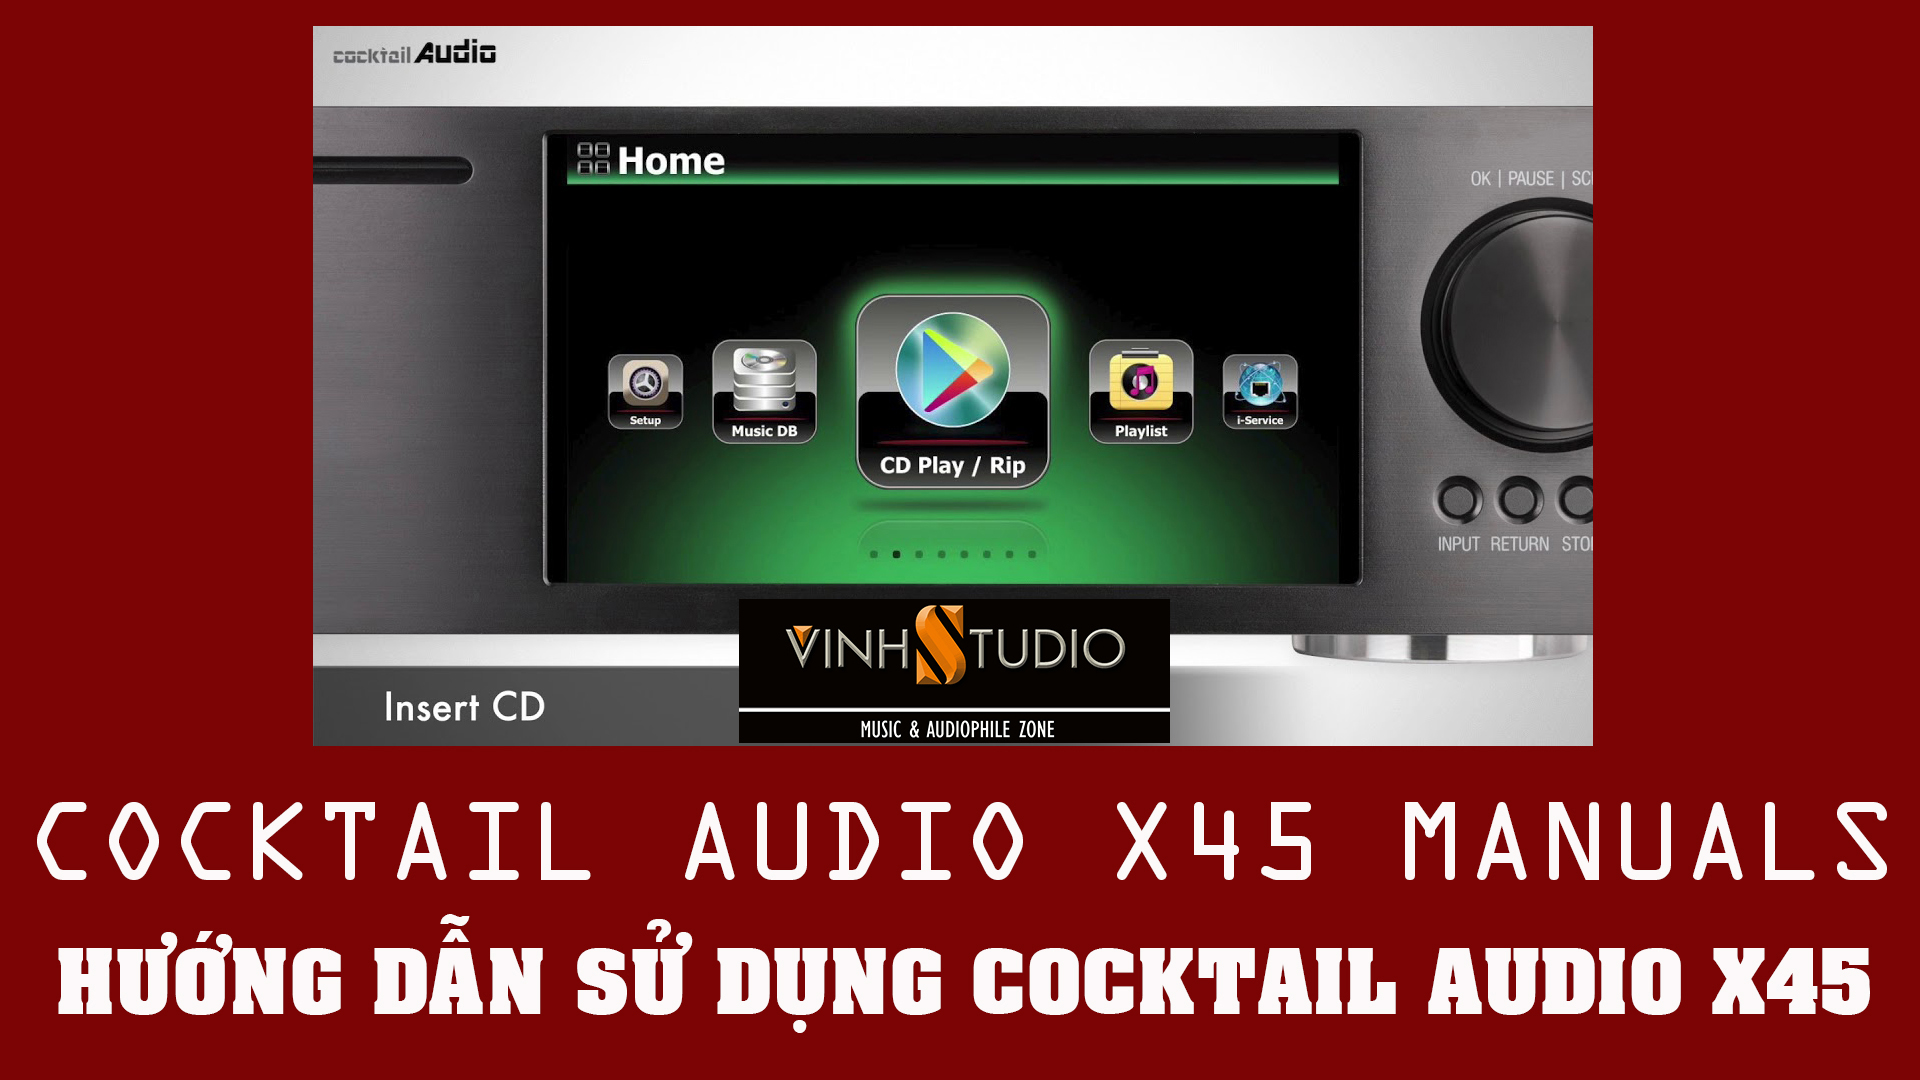 Hướng dẫn chi tiết cách sử dụng Dac & Music Server Cocktail Audio x45 tại Vinhstudio